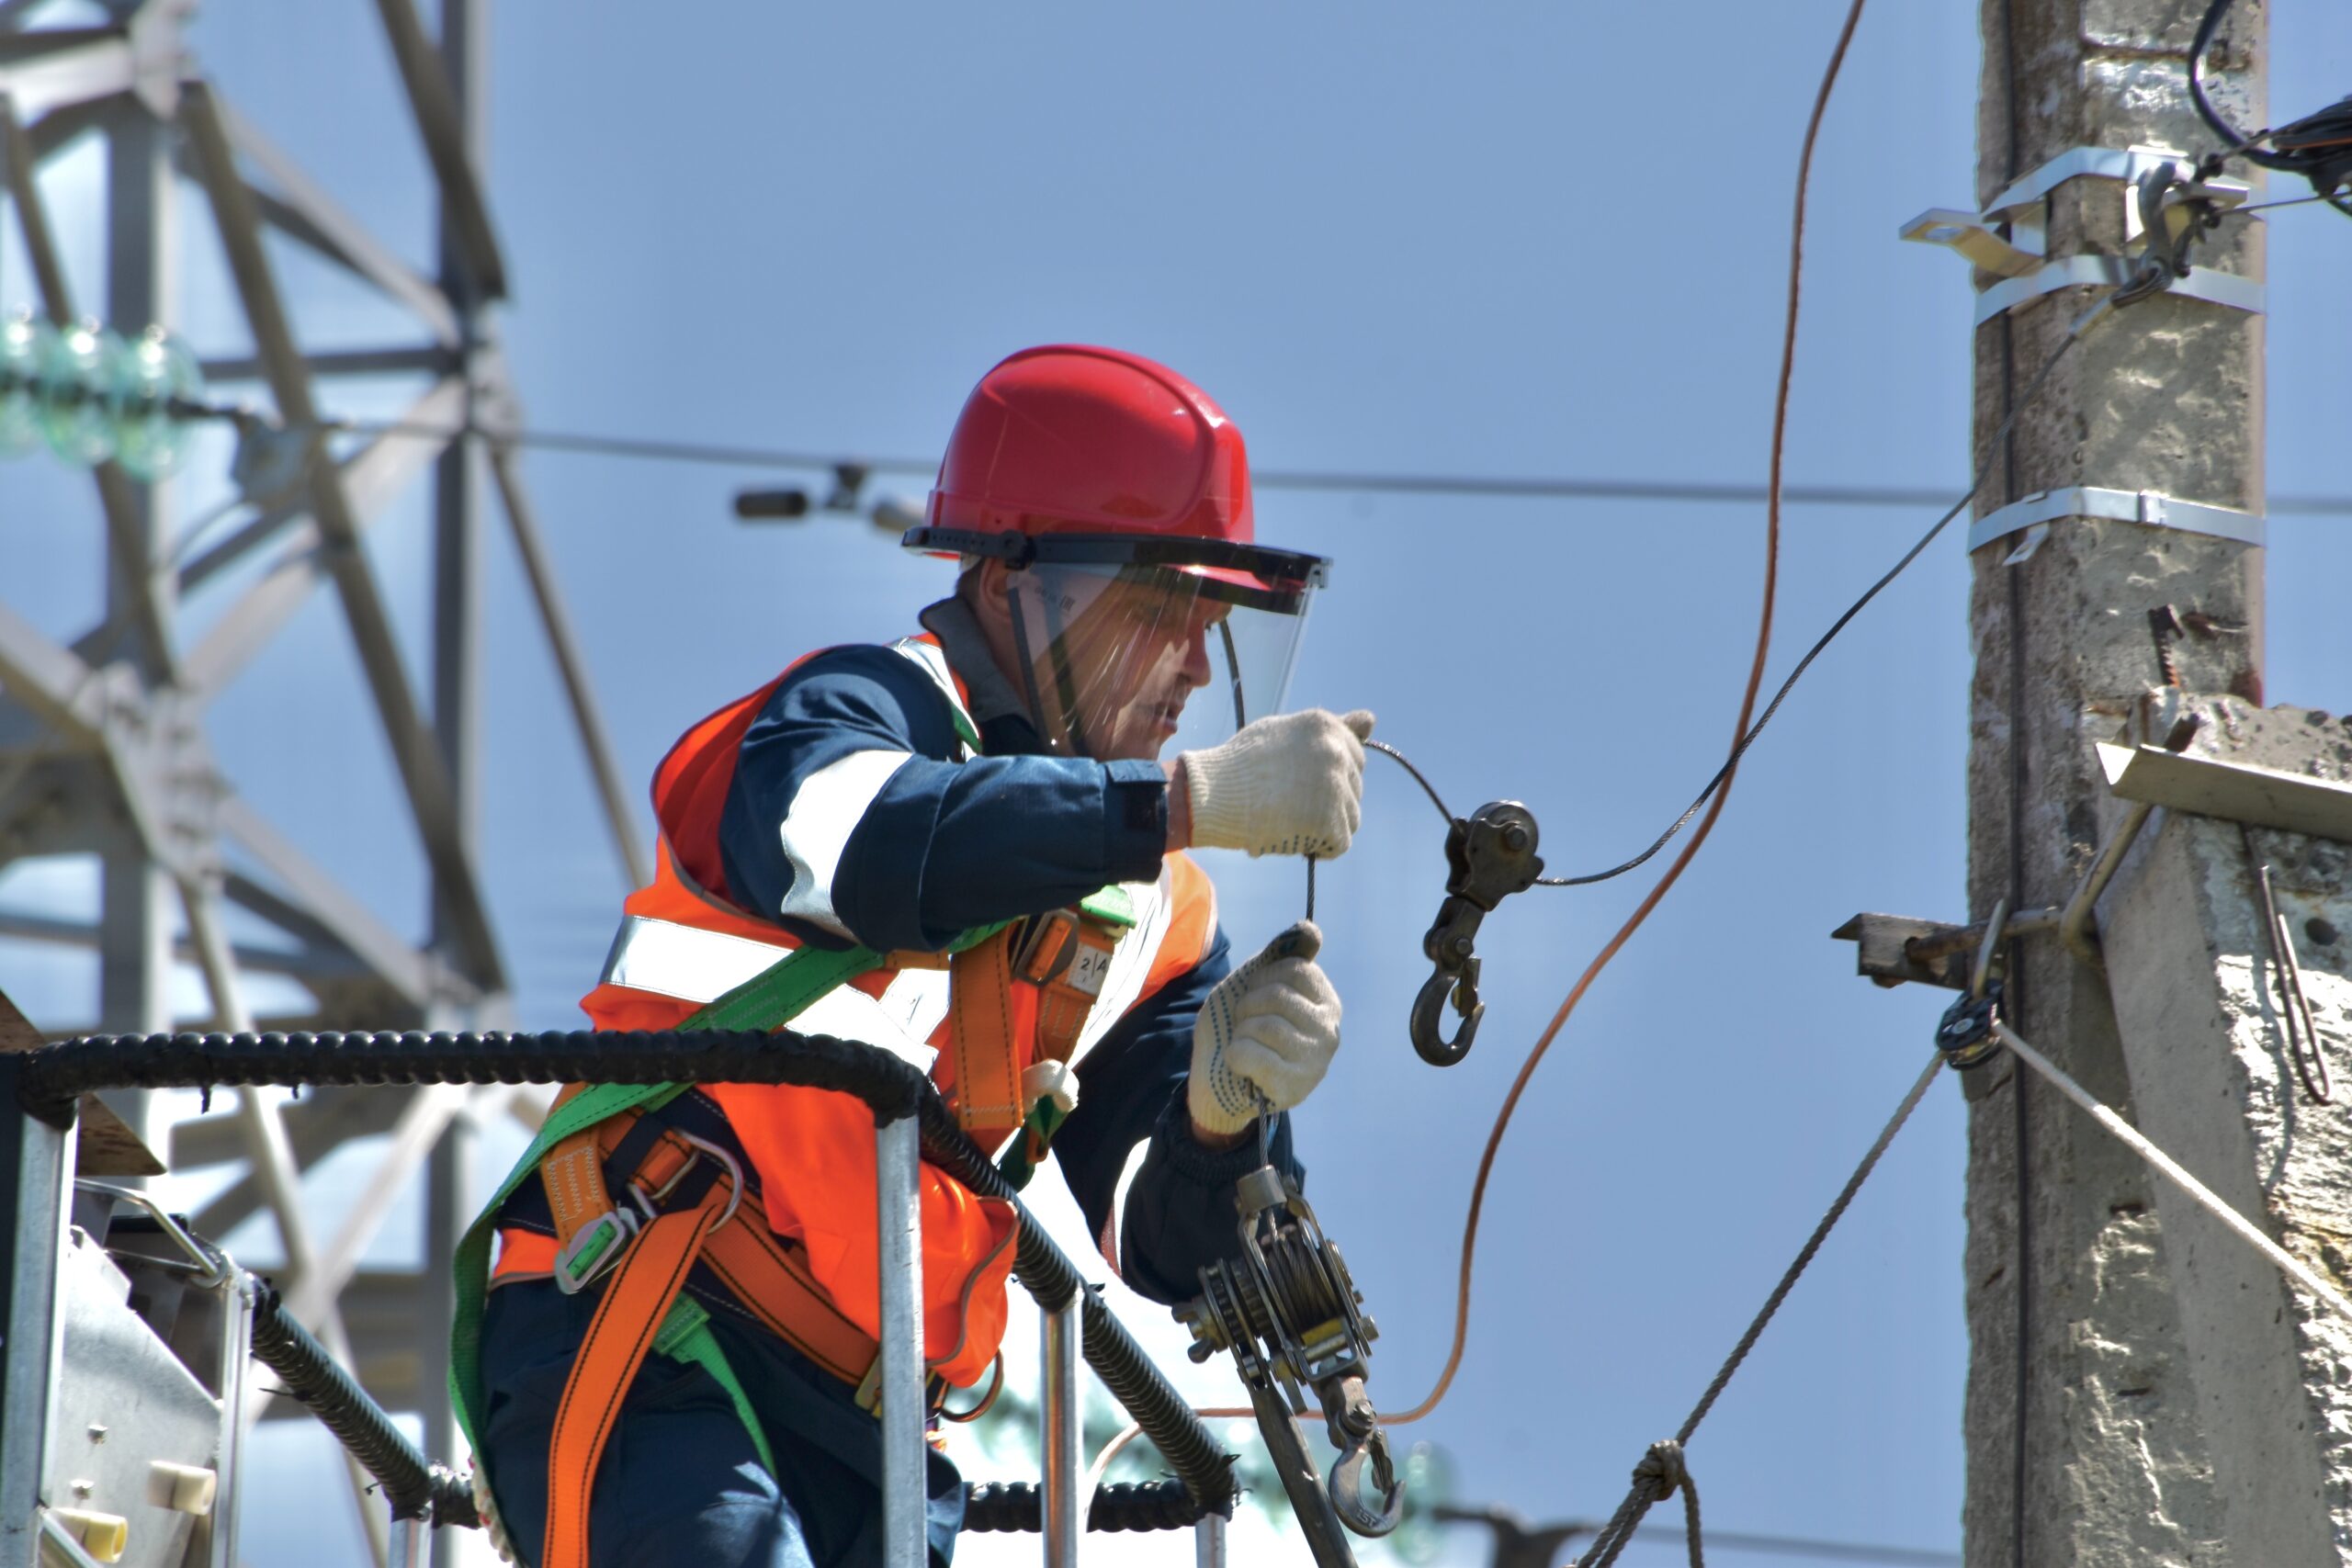 Bilden visar en elektriker som utför höghöjdsarbete. Genom rekryteringsutbildningar inom kravutbildning kan du enkelt rekrytera nya anställda under pågående kravutbildning som under en ESA utbildning.